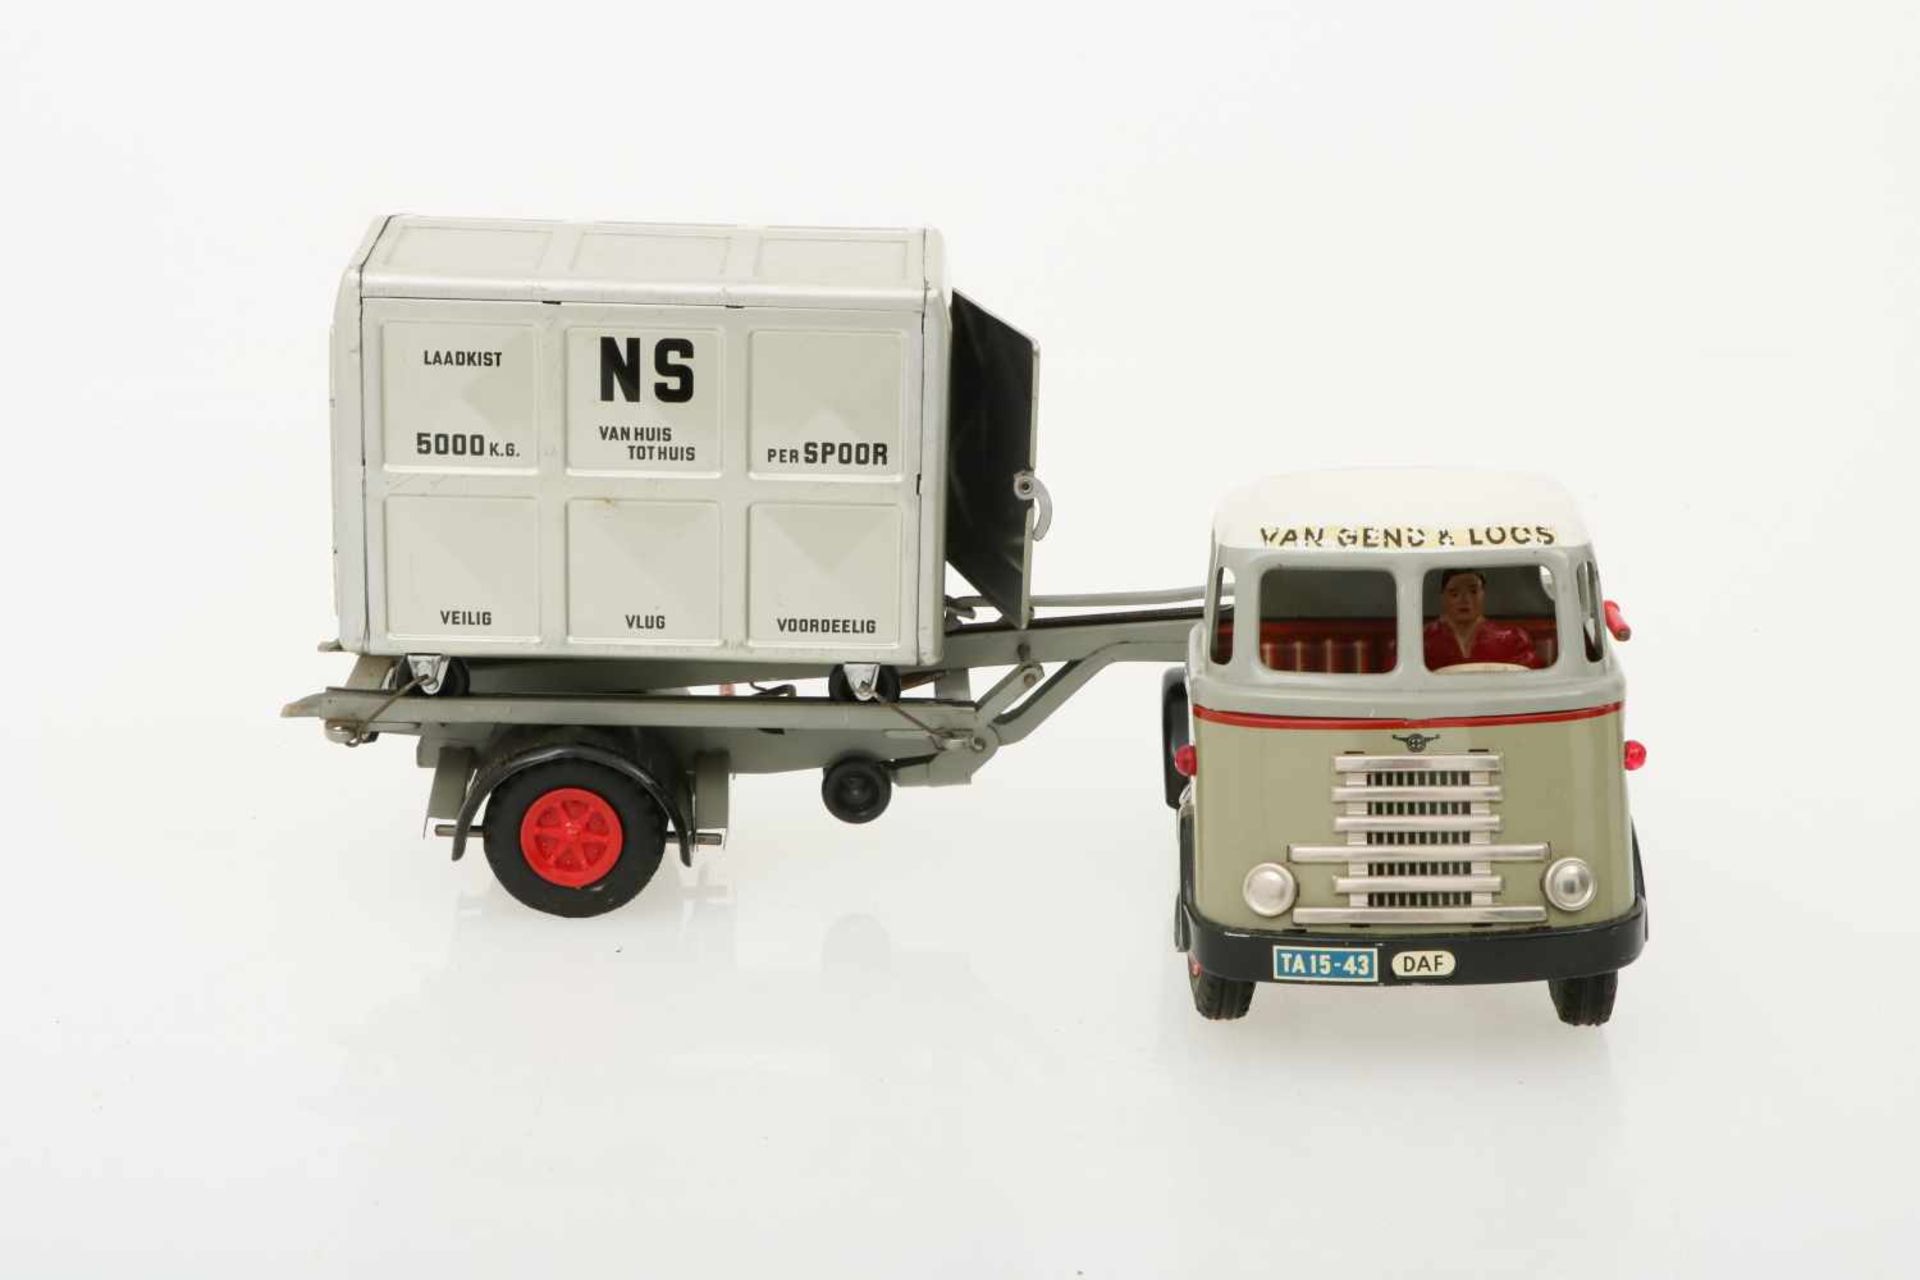 Arnold DAF truck van Gend & Loos met container NS van huis tot huis. - Bild 4 aus 5